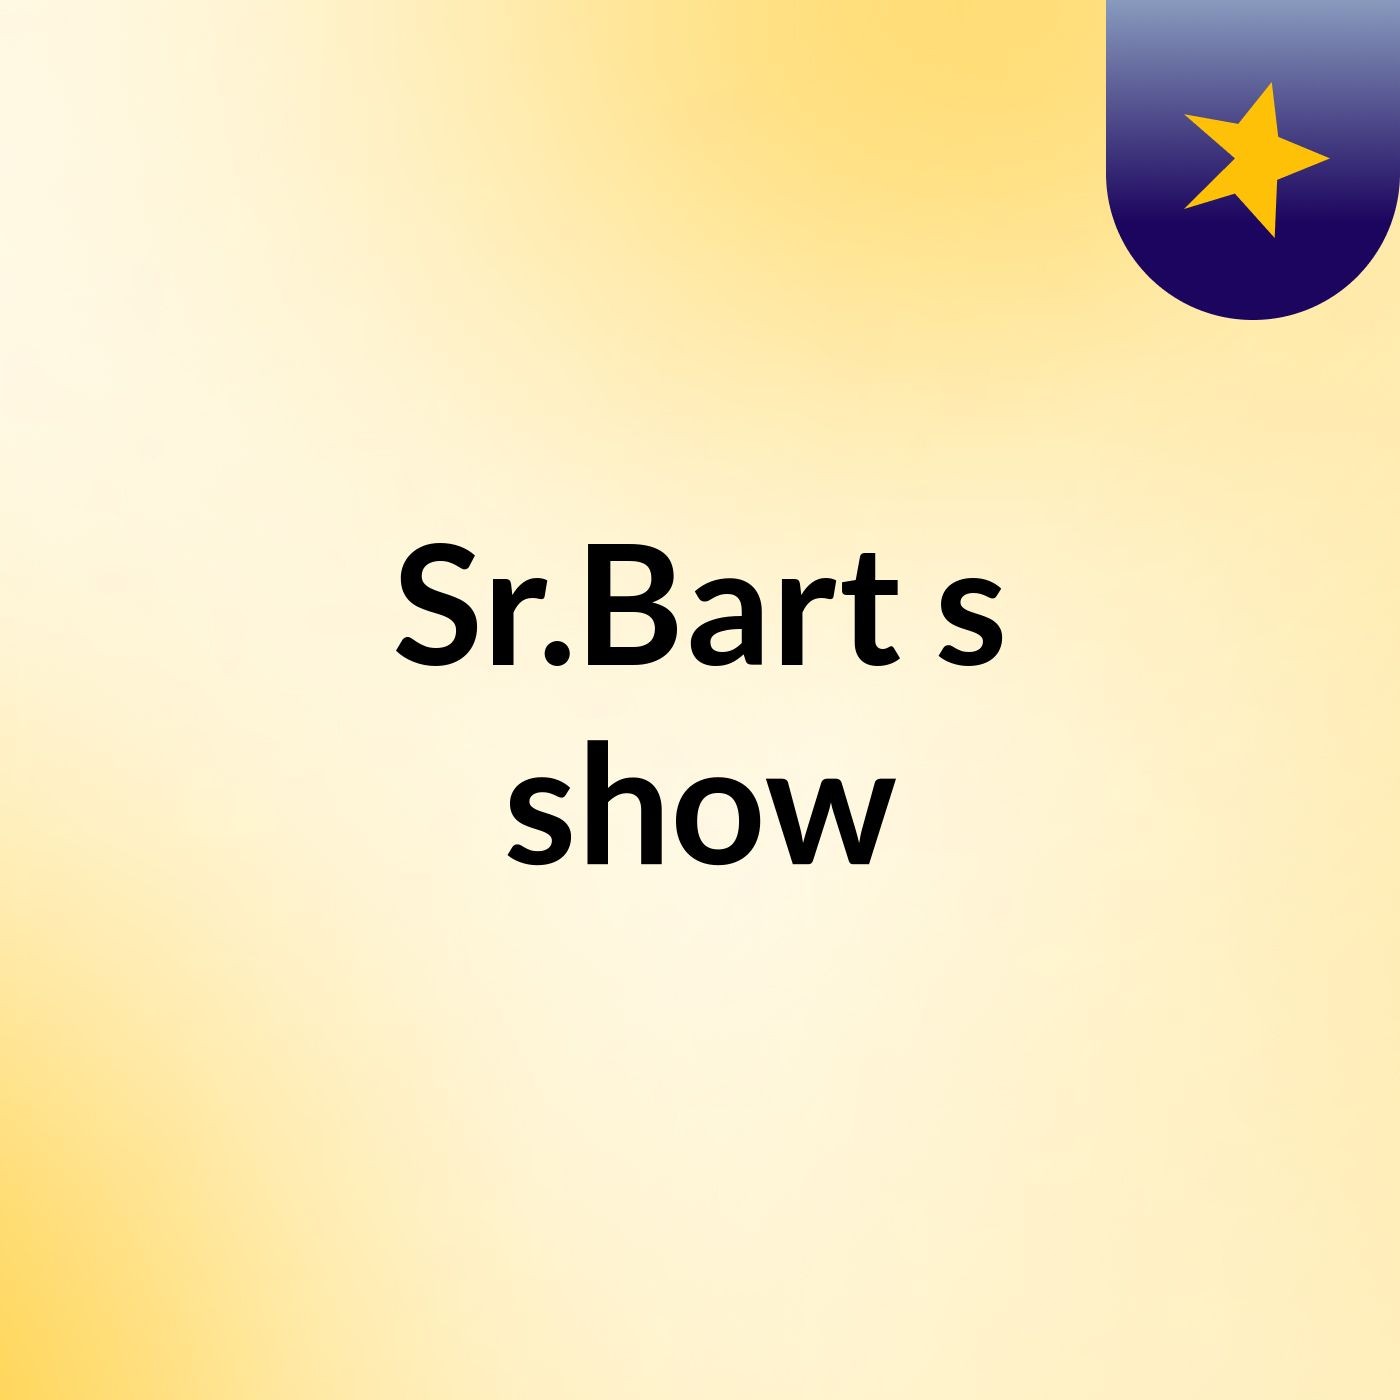 Sr.Bart's show